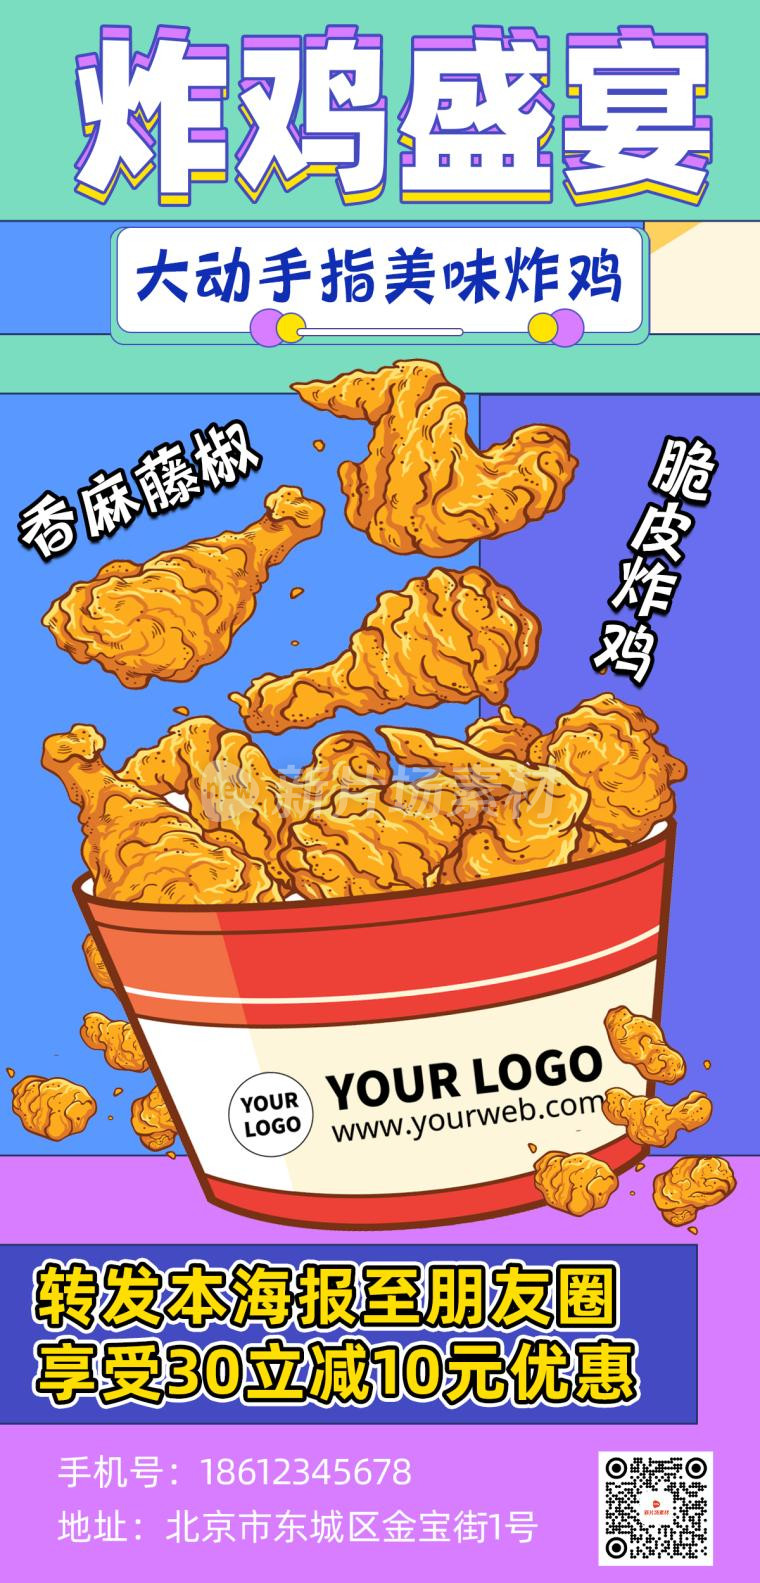 炸鸡营销宣传撞色时尚psd长图海报